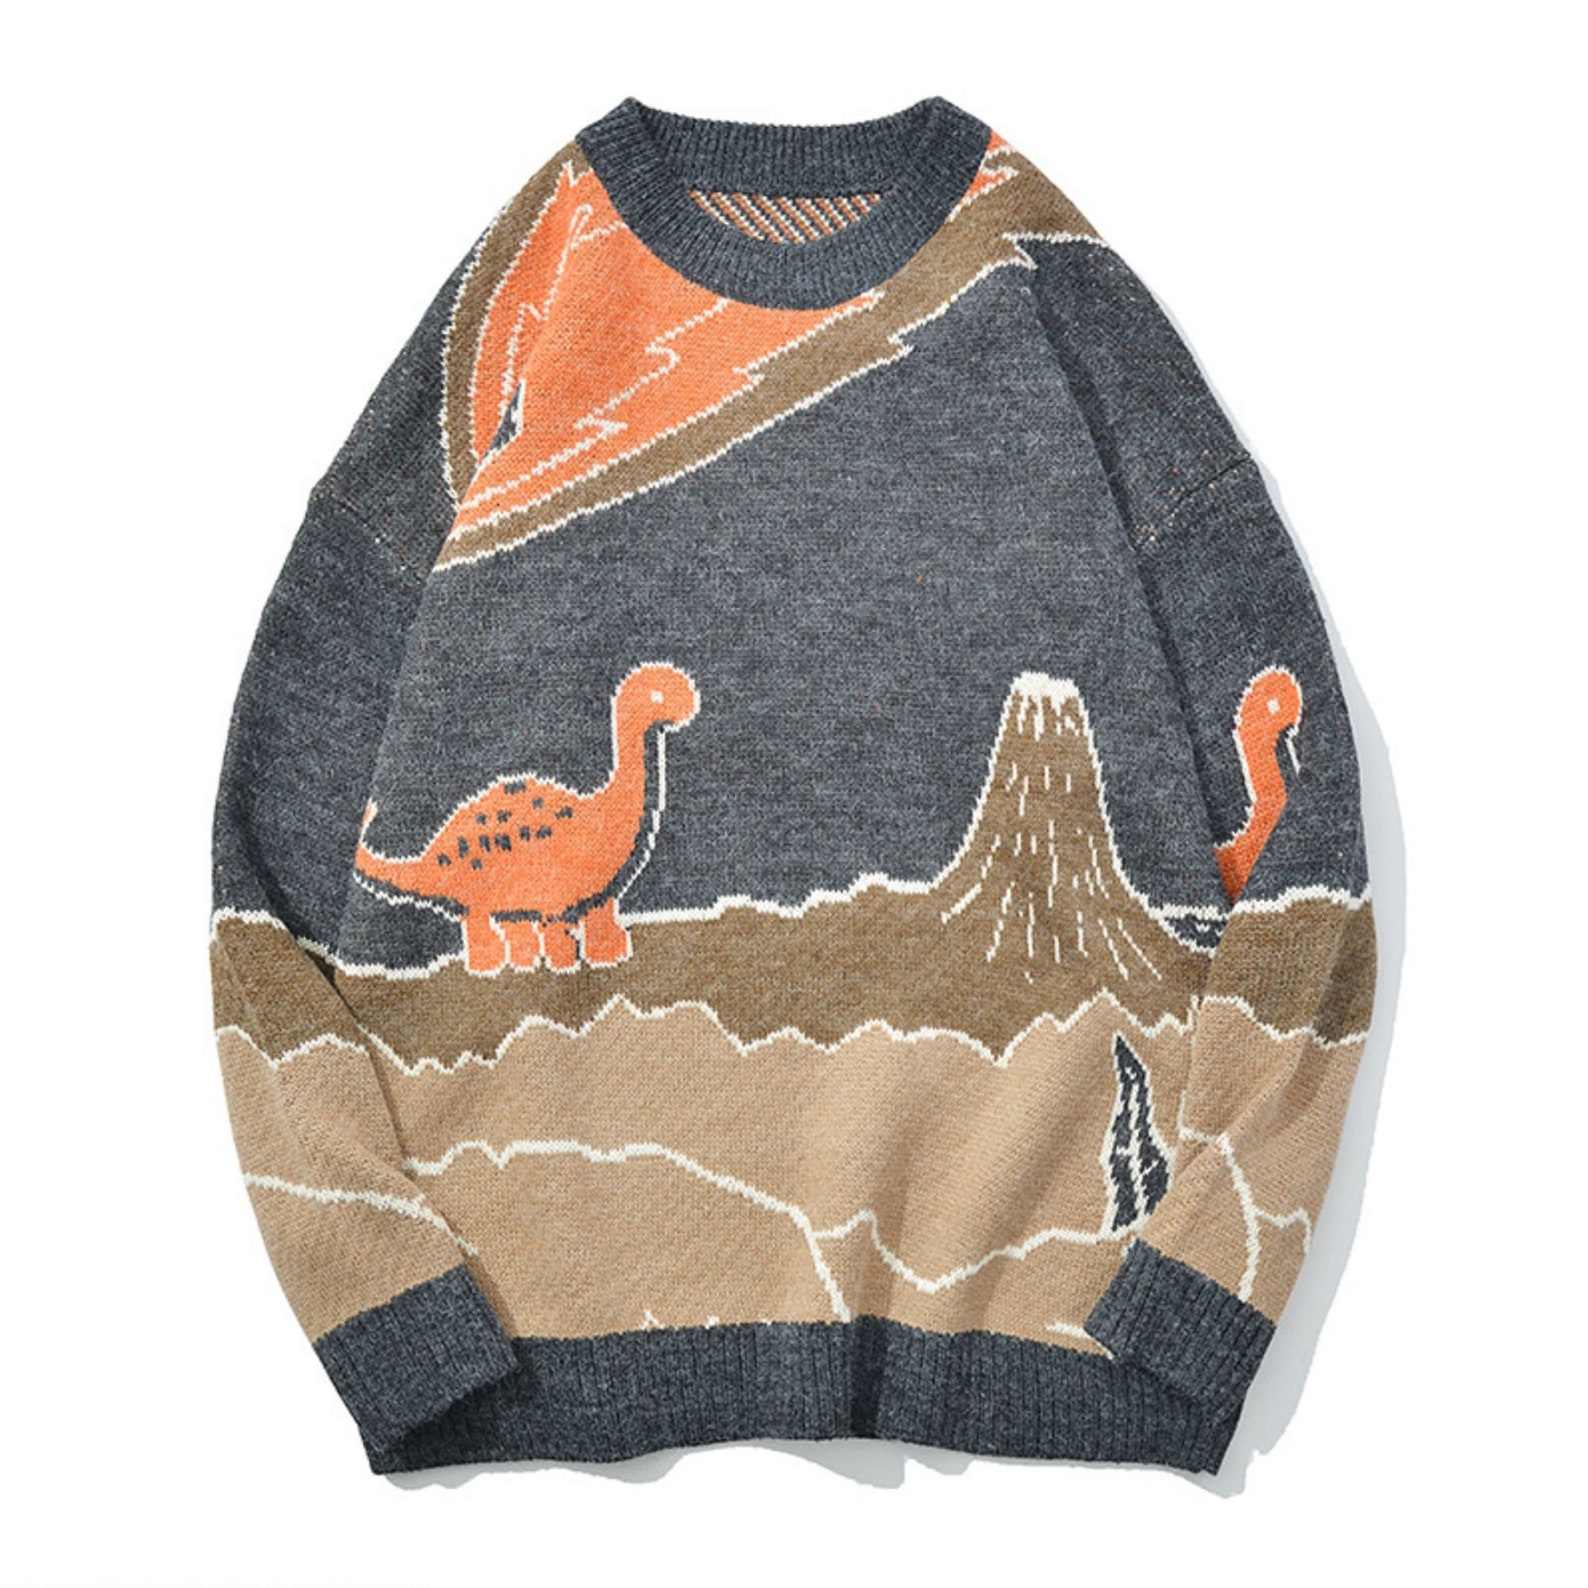 Dinosaur Jurassic Volcano Illustration Crewneck Knit Jumper | Etsy